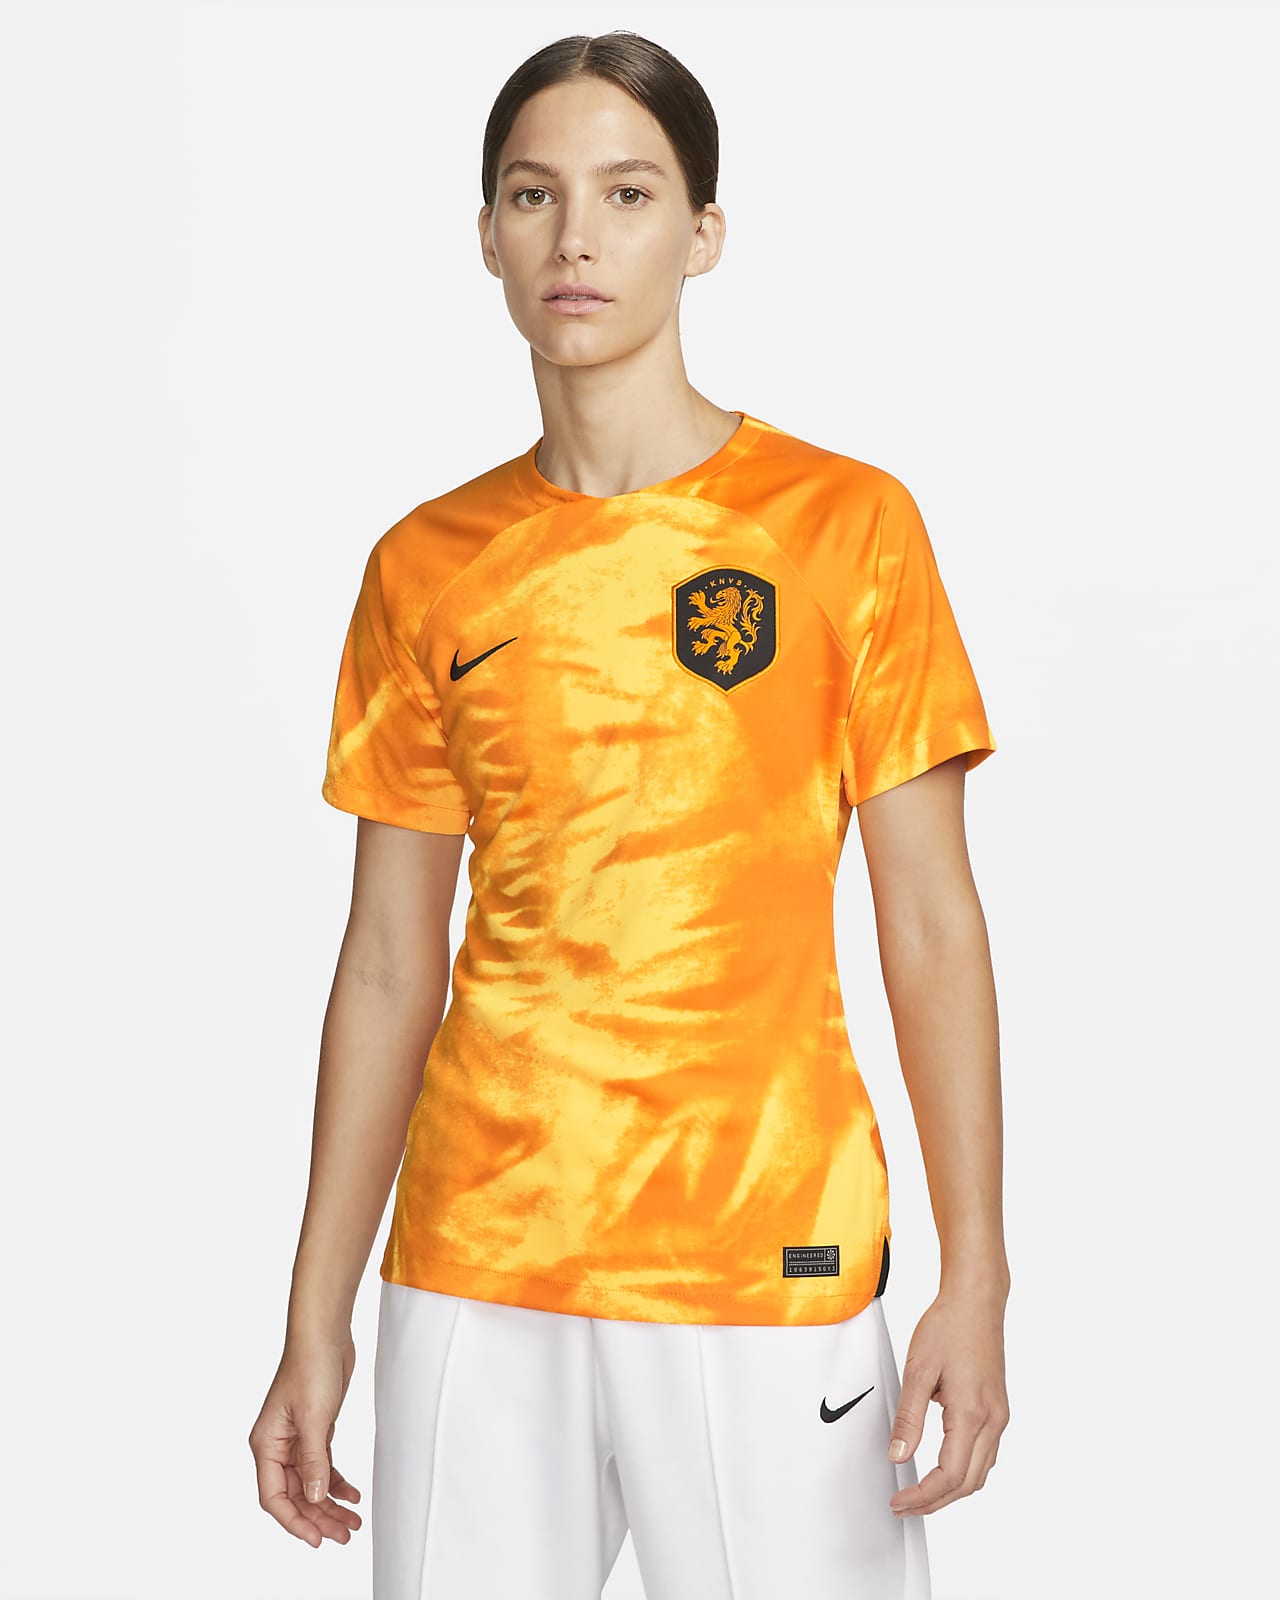 Zending Democratie ongezond Nederland 2022/23 Stadium Thuis Nike Dri-FIT voetbalshirt voor dames. Nike  NL